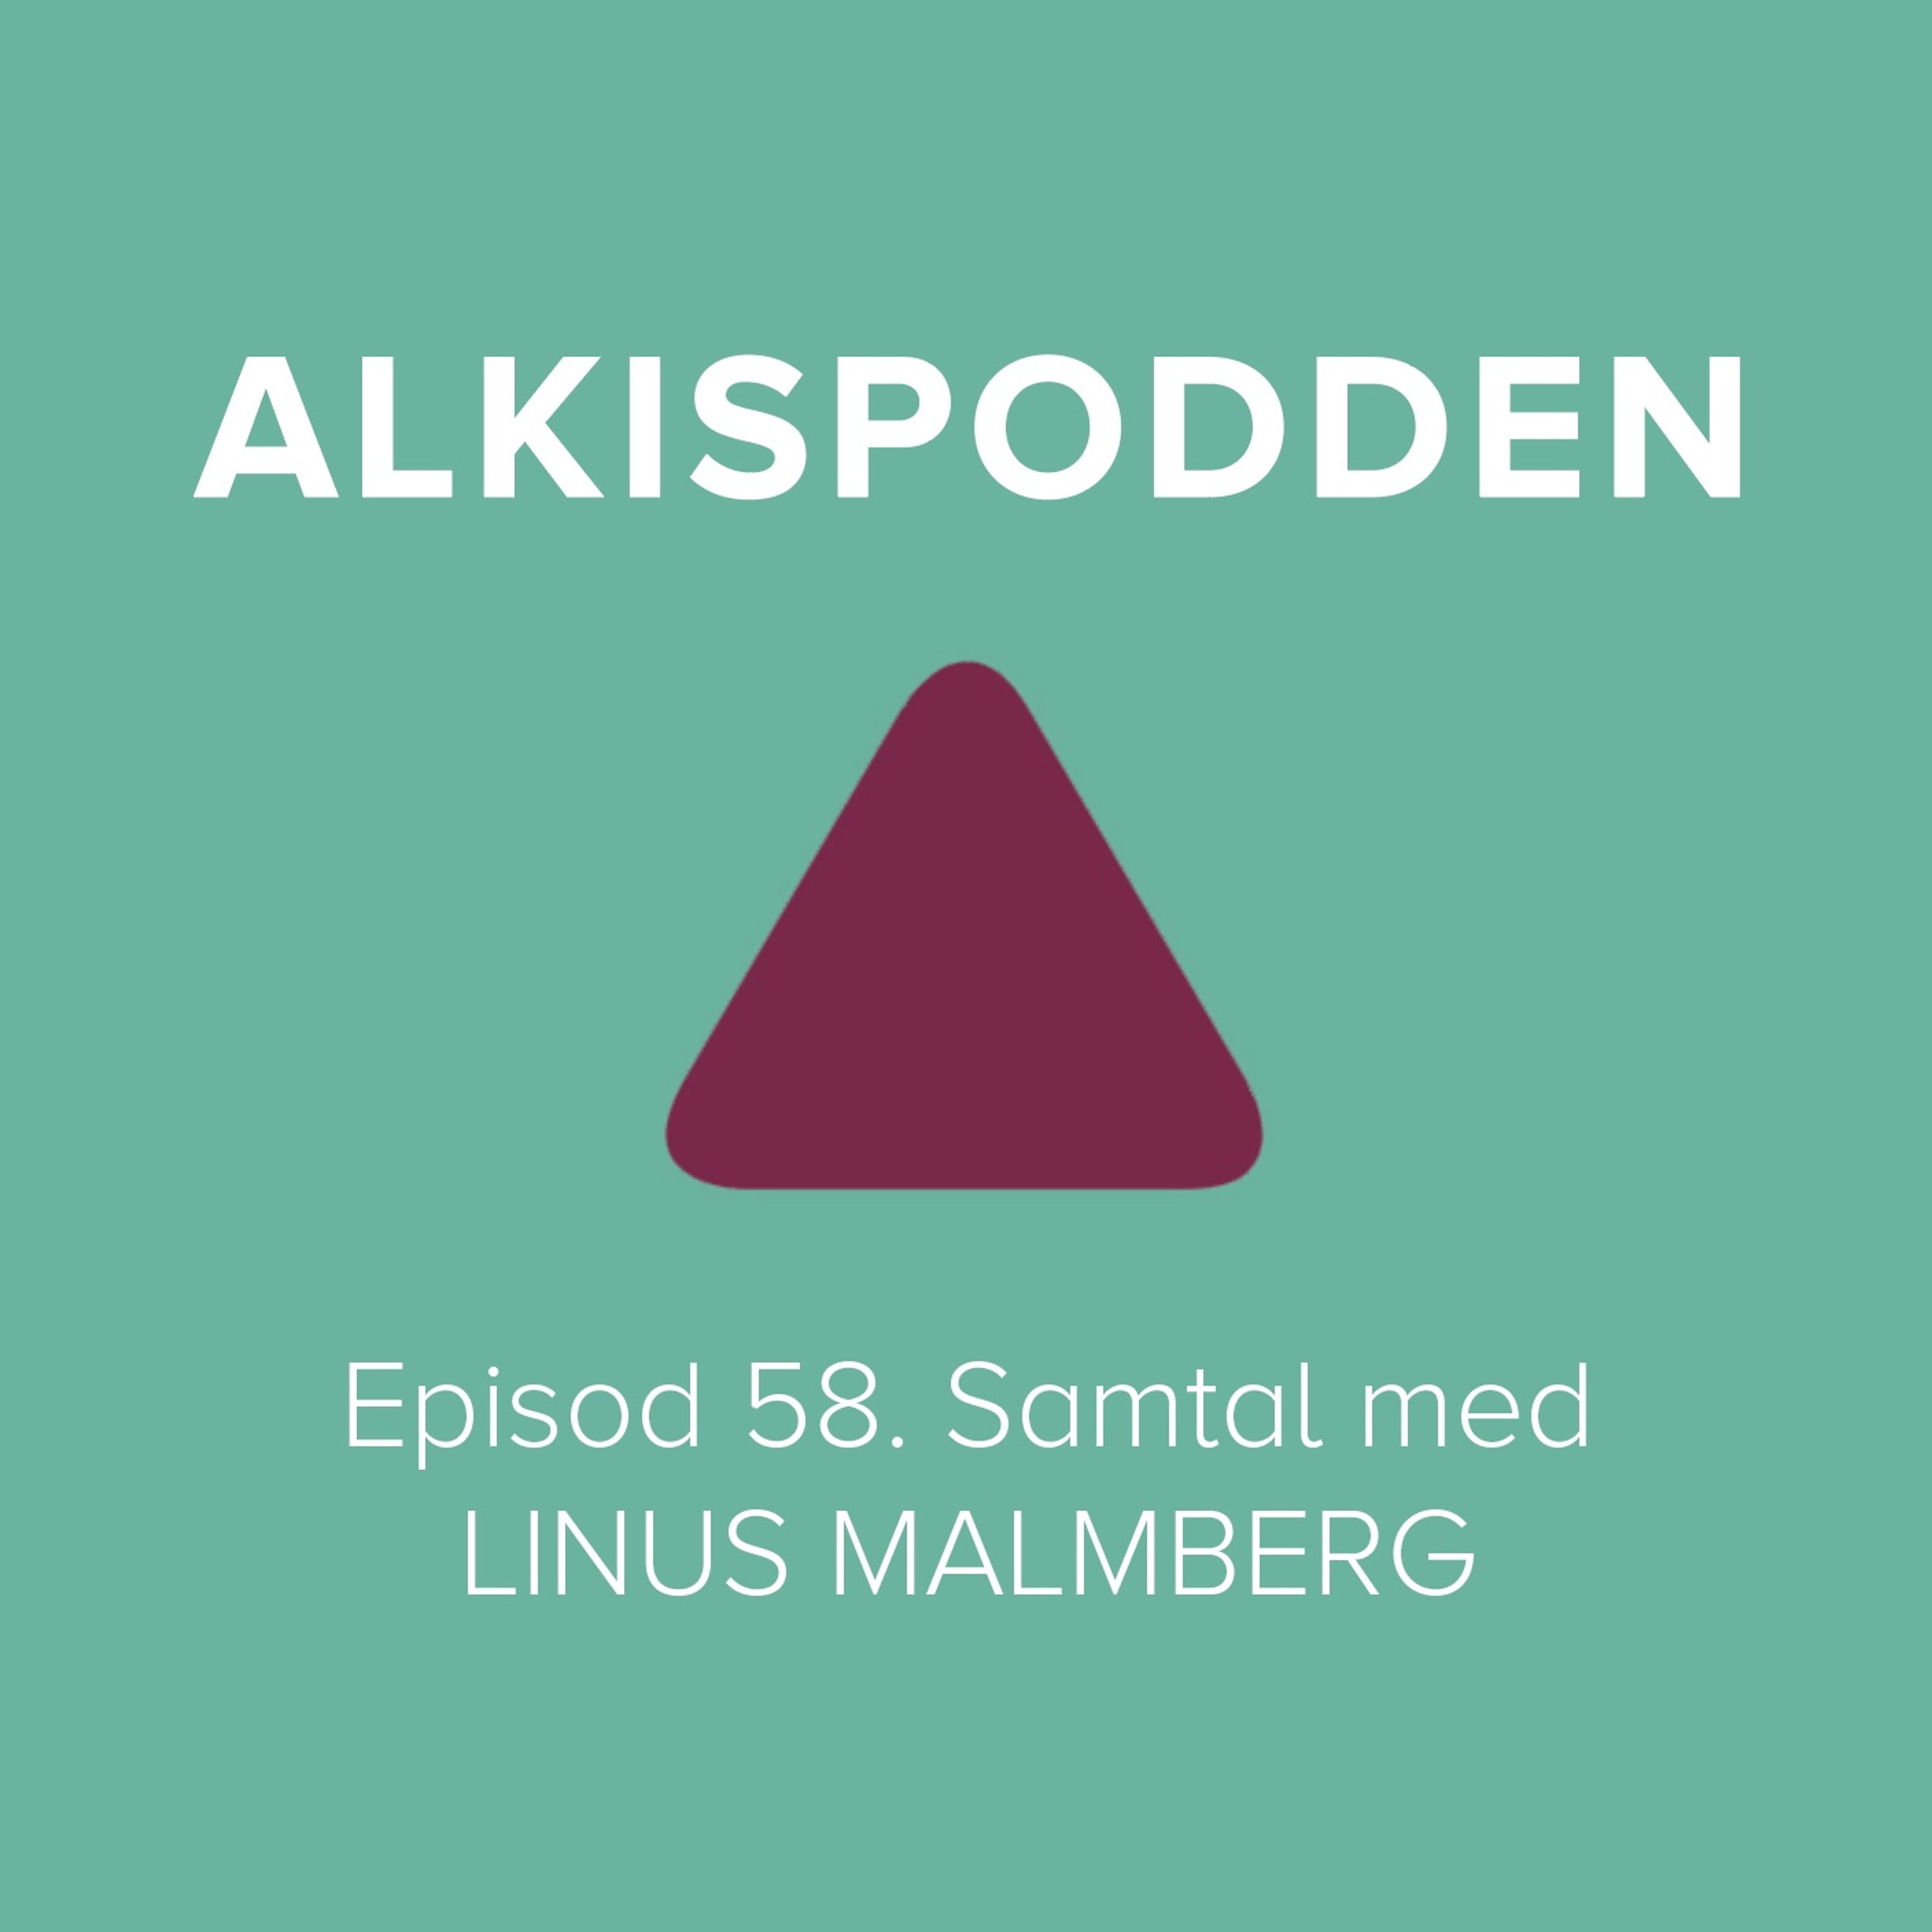 Episod 58. Samtal med LINUS MALMBERG – Alkispodden – Podcast – Podtail